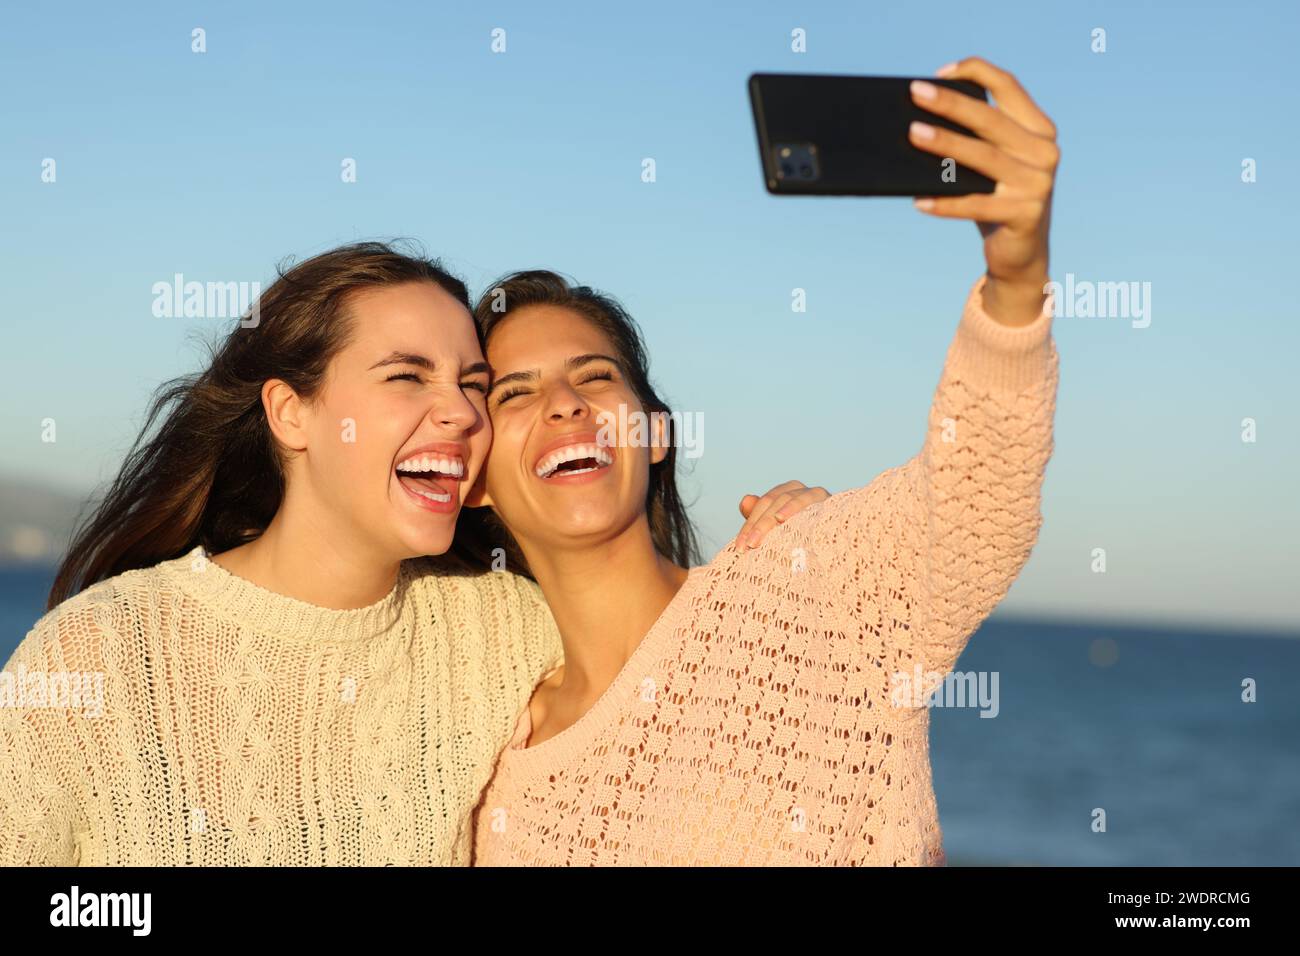 Zwei glückliche Freunde, die Selfies machen, lachen am Strand bei Sonnenuntergang Stockfoto